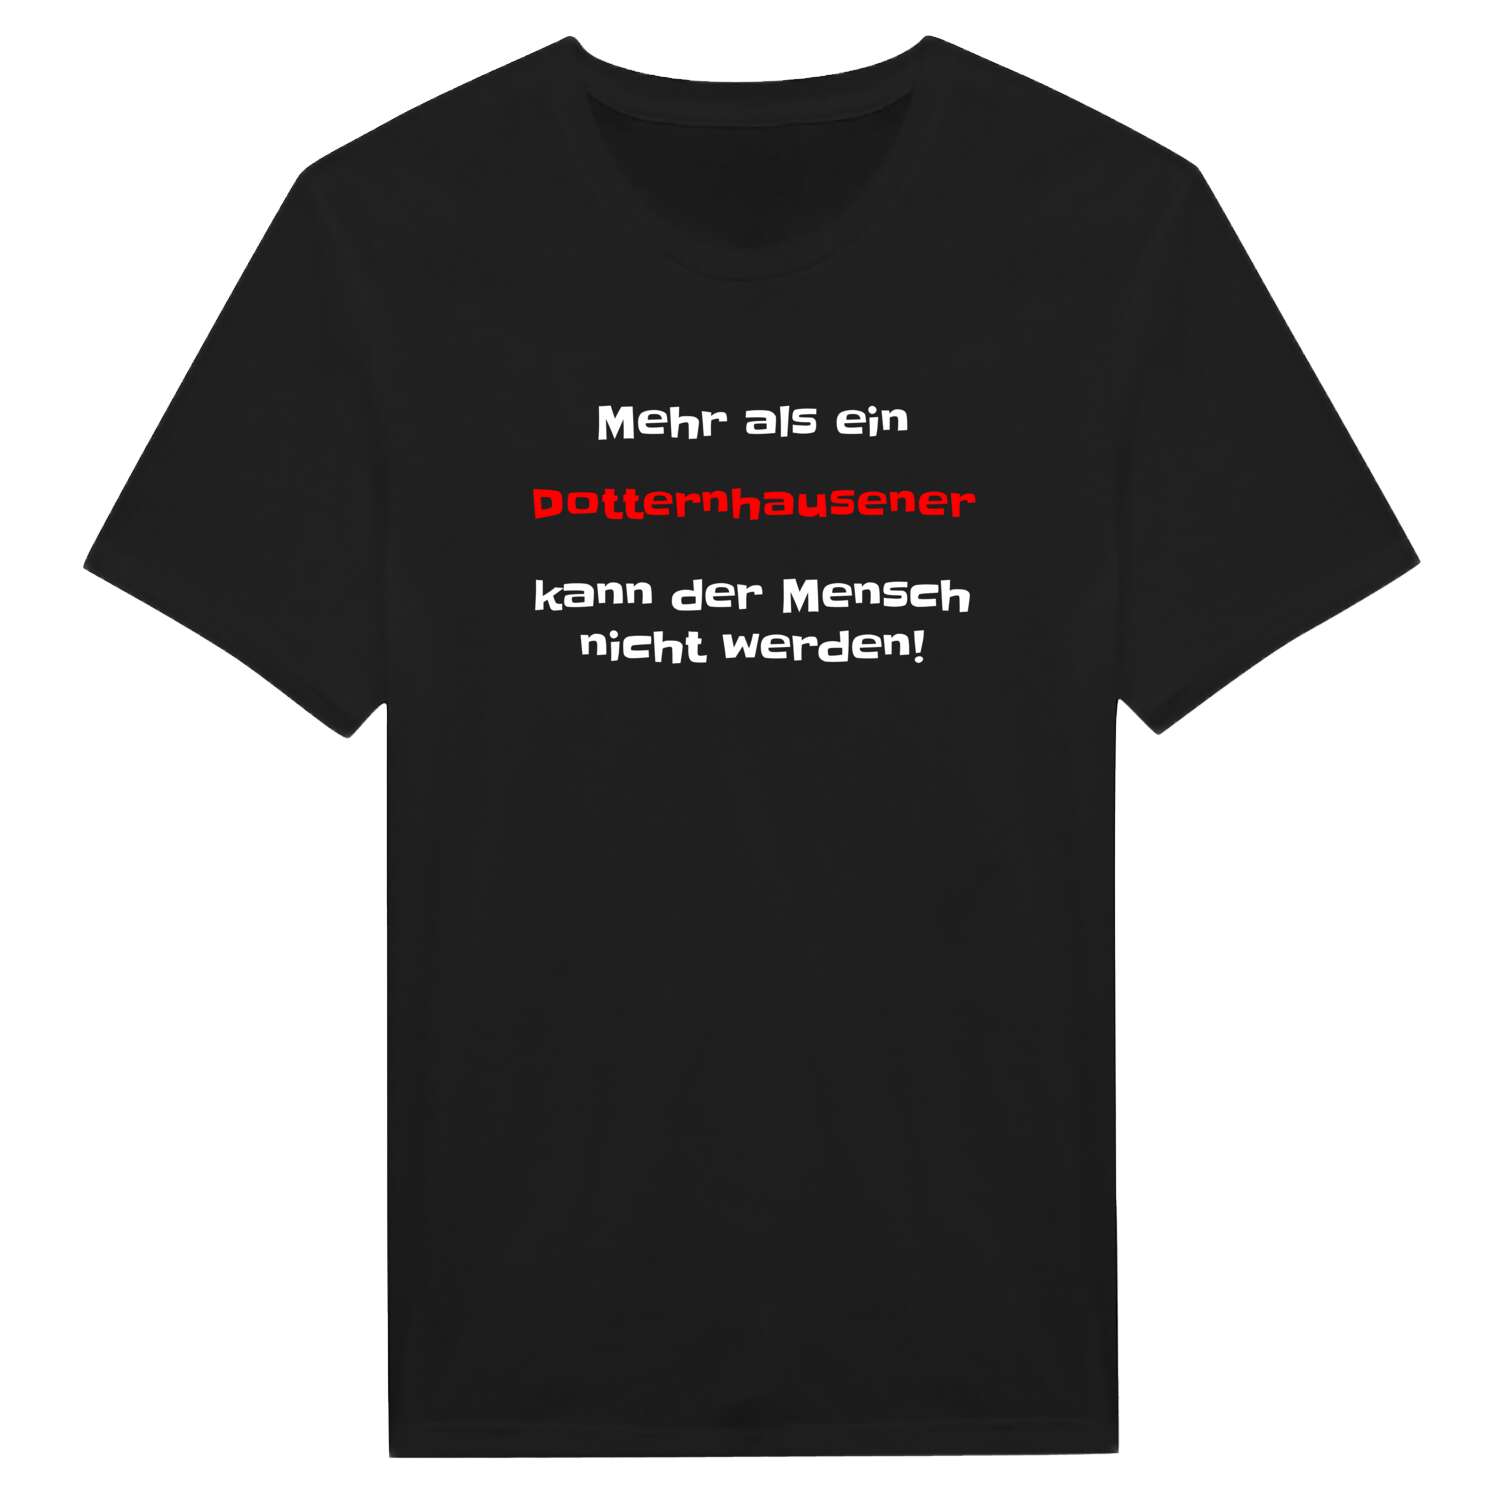 Dotternhausen T-Shirt »Mehr als ein«